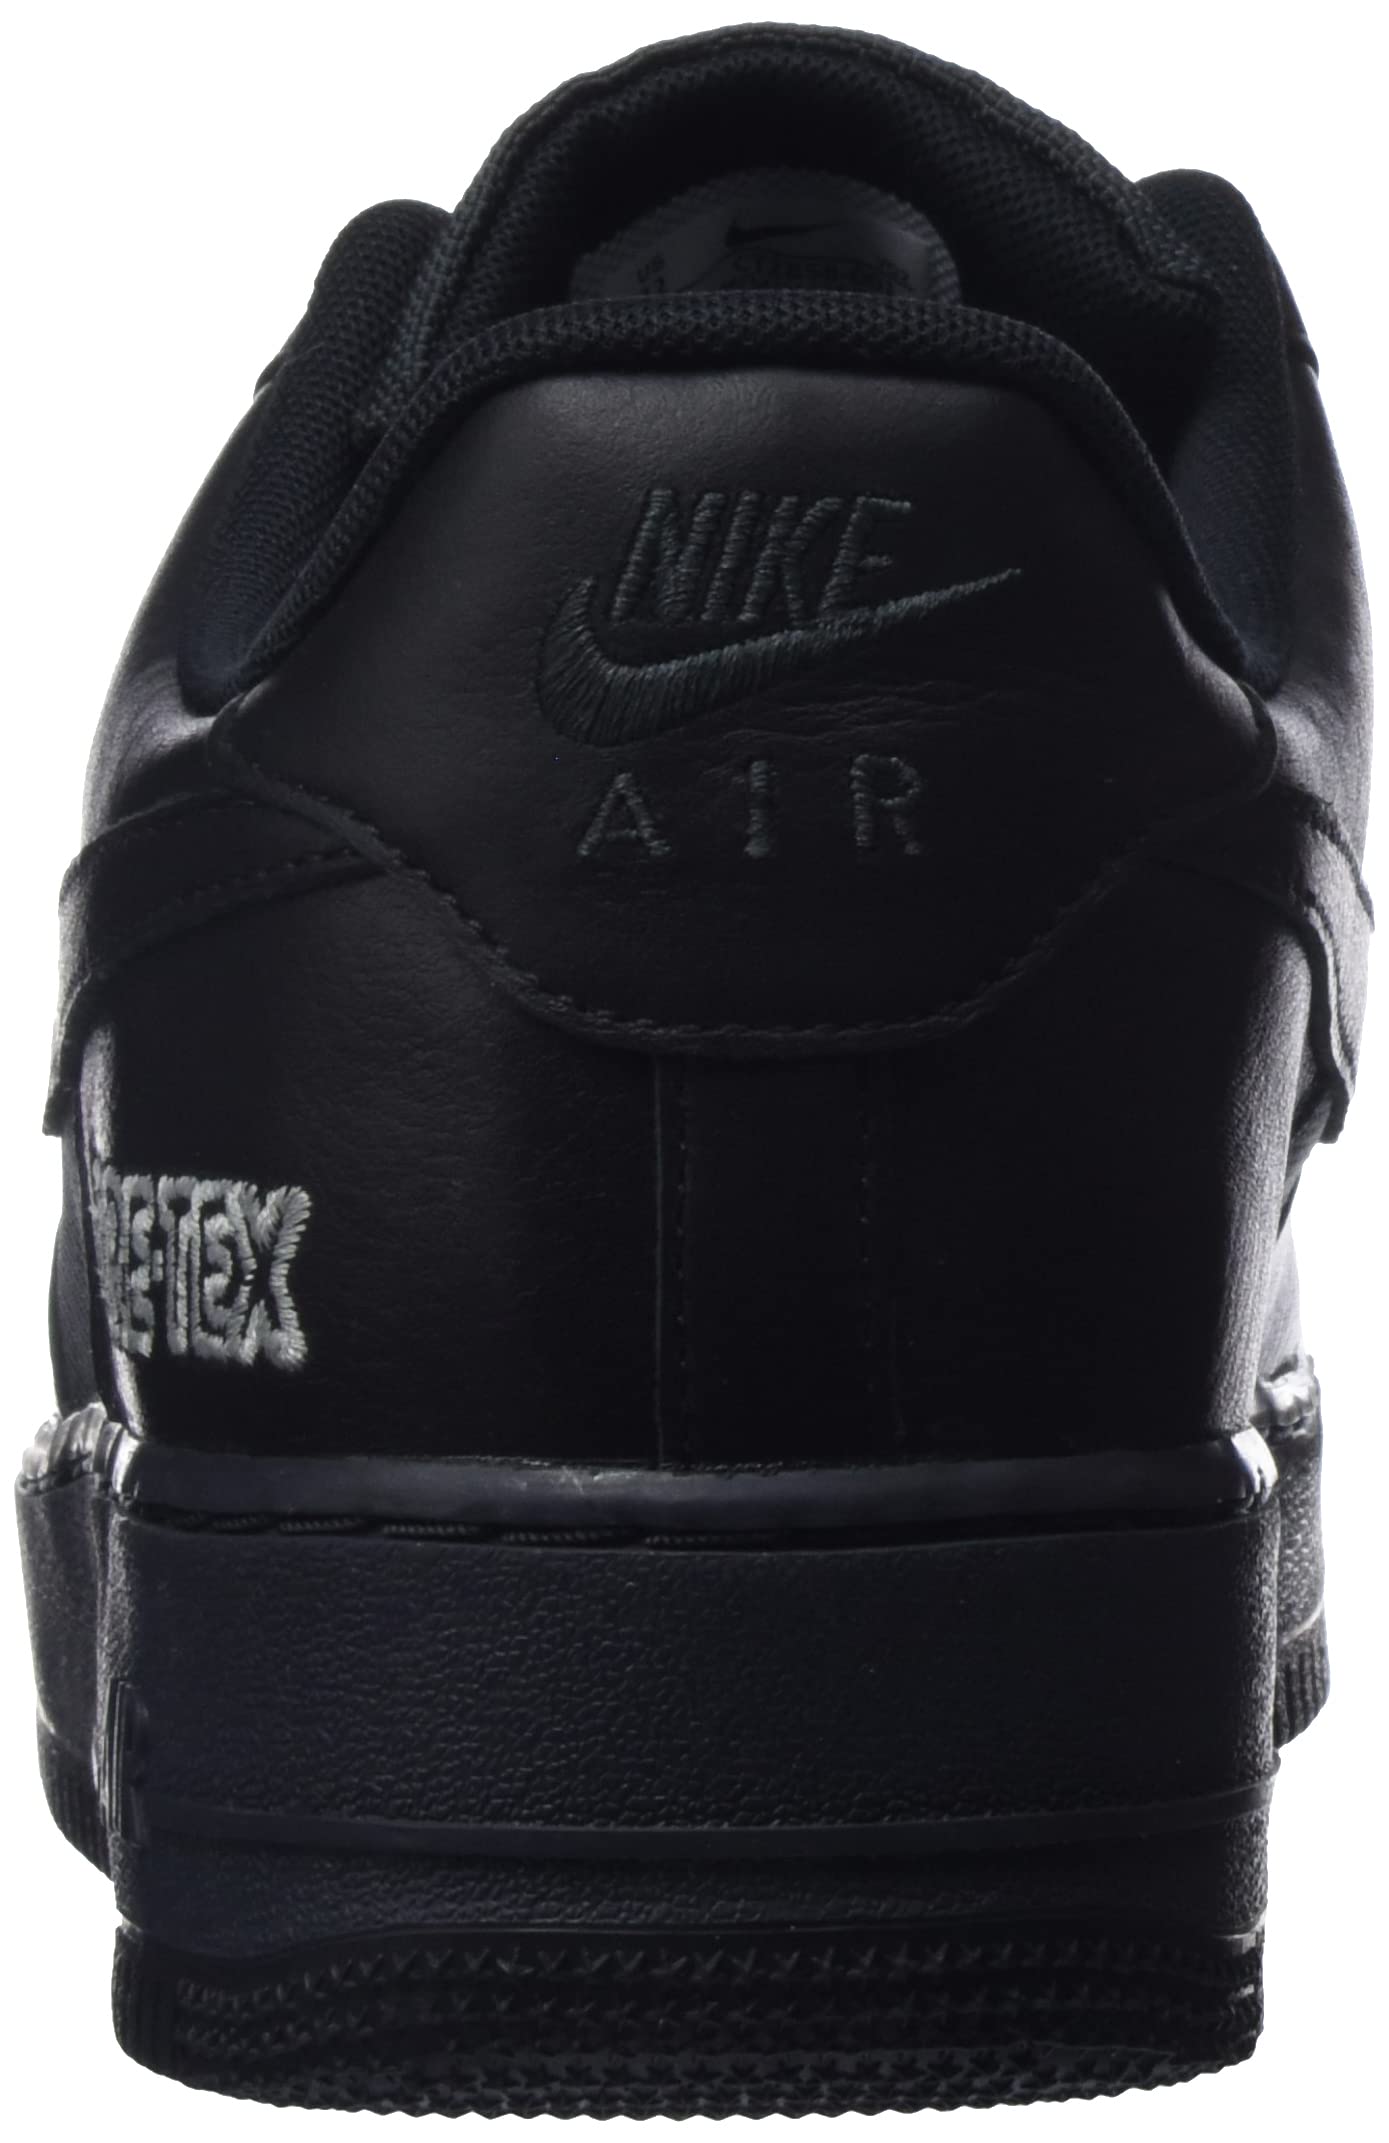 Nike Mens Air Force 1 Low Gore-Tex CT2858 001 Black